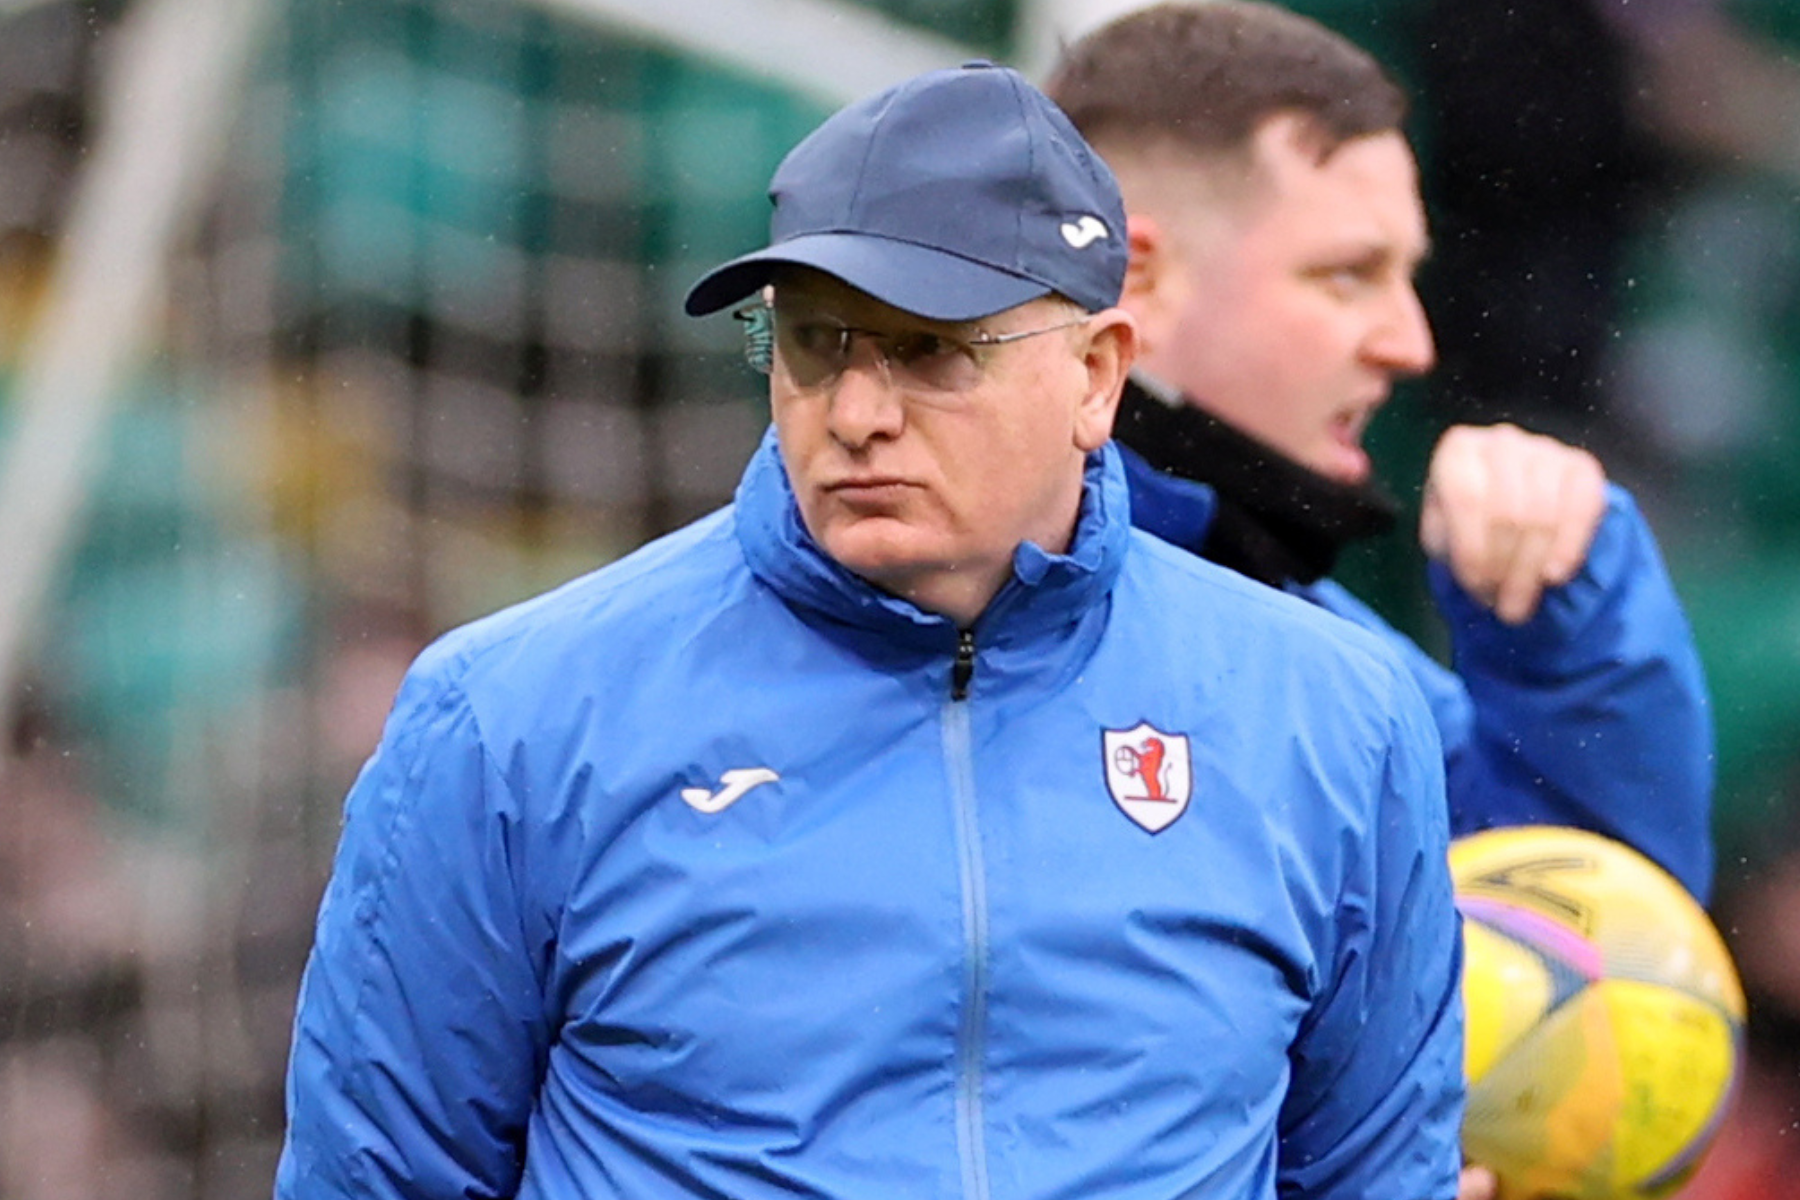 Raith Rovers hopeful John McGlynn will sign new deal amid Falkirk links